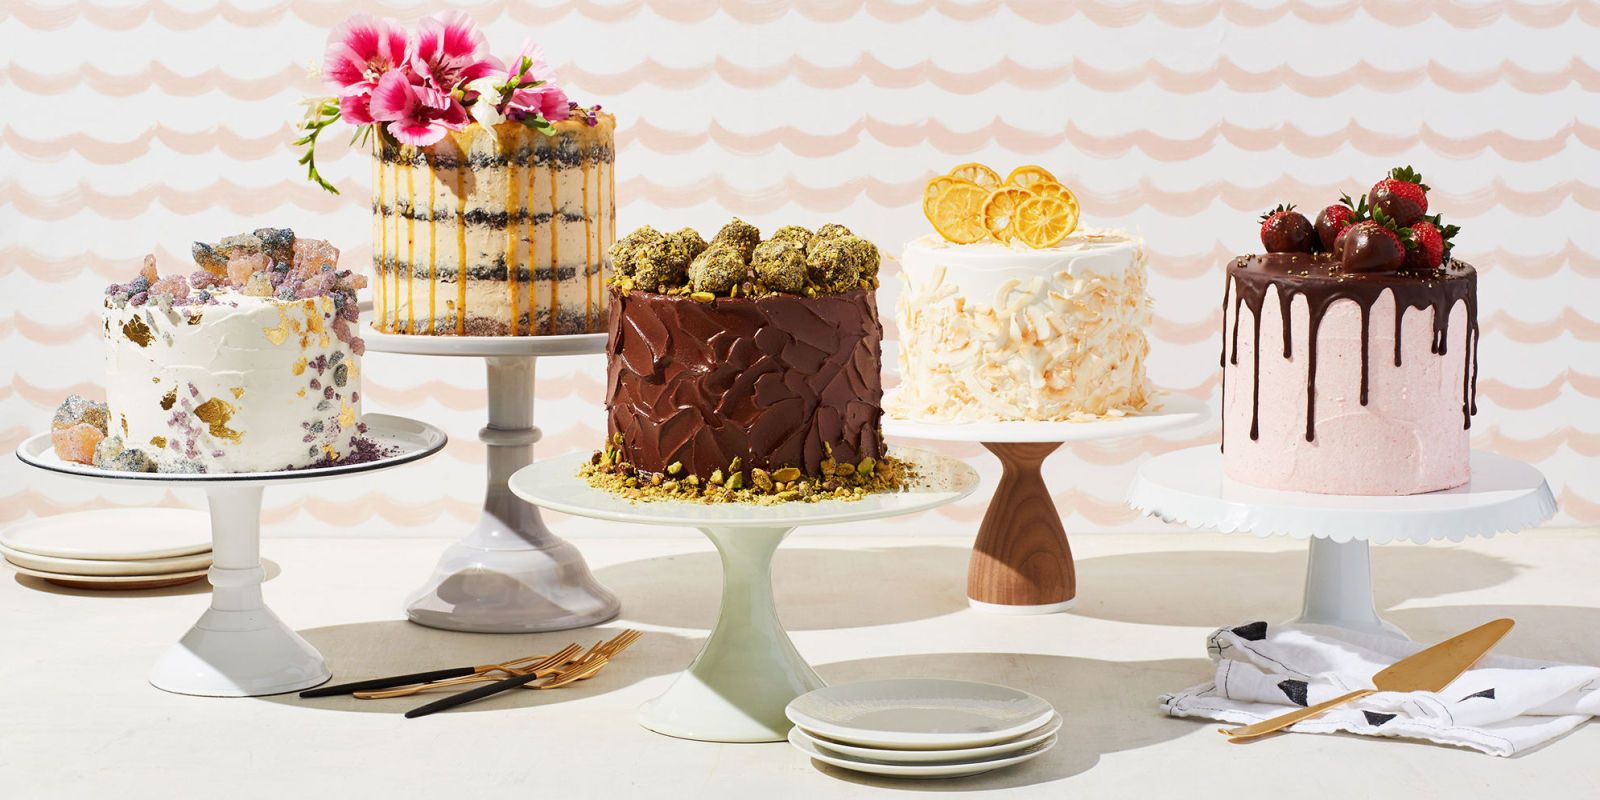 Huge 15-tier cake celebrates 140 years of popular baking trends - Mirror  Online